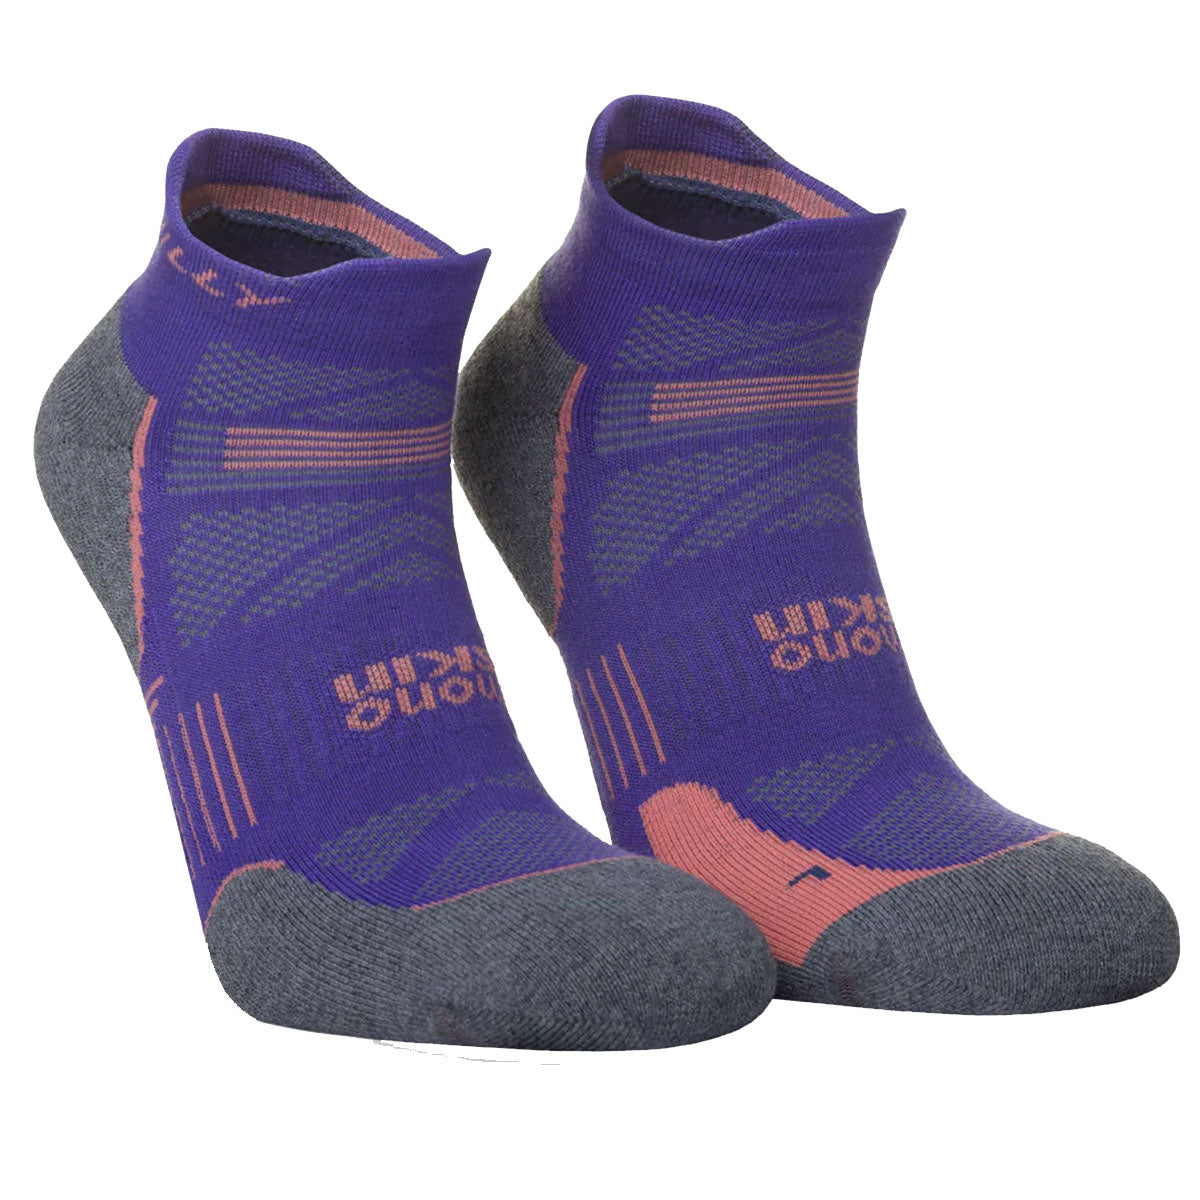 Hilly Supreme Anklet Med Socks - Womens - Plum/Grey Marl